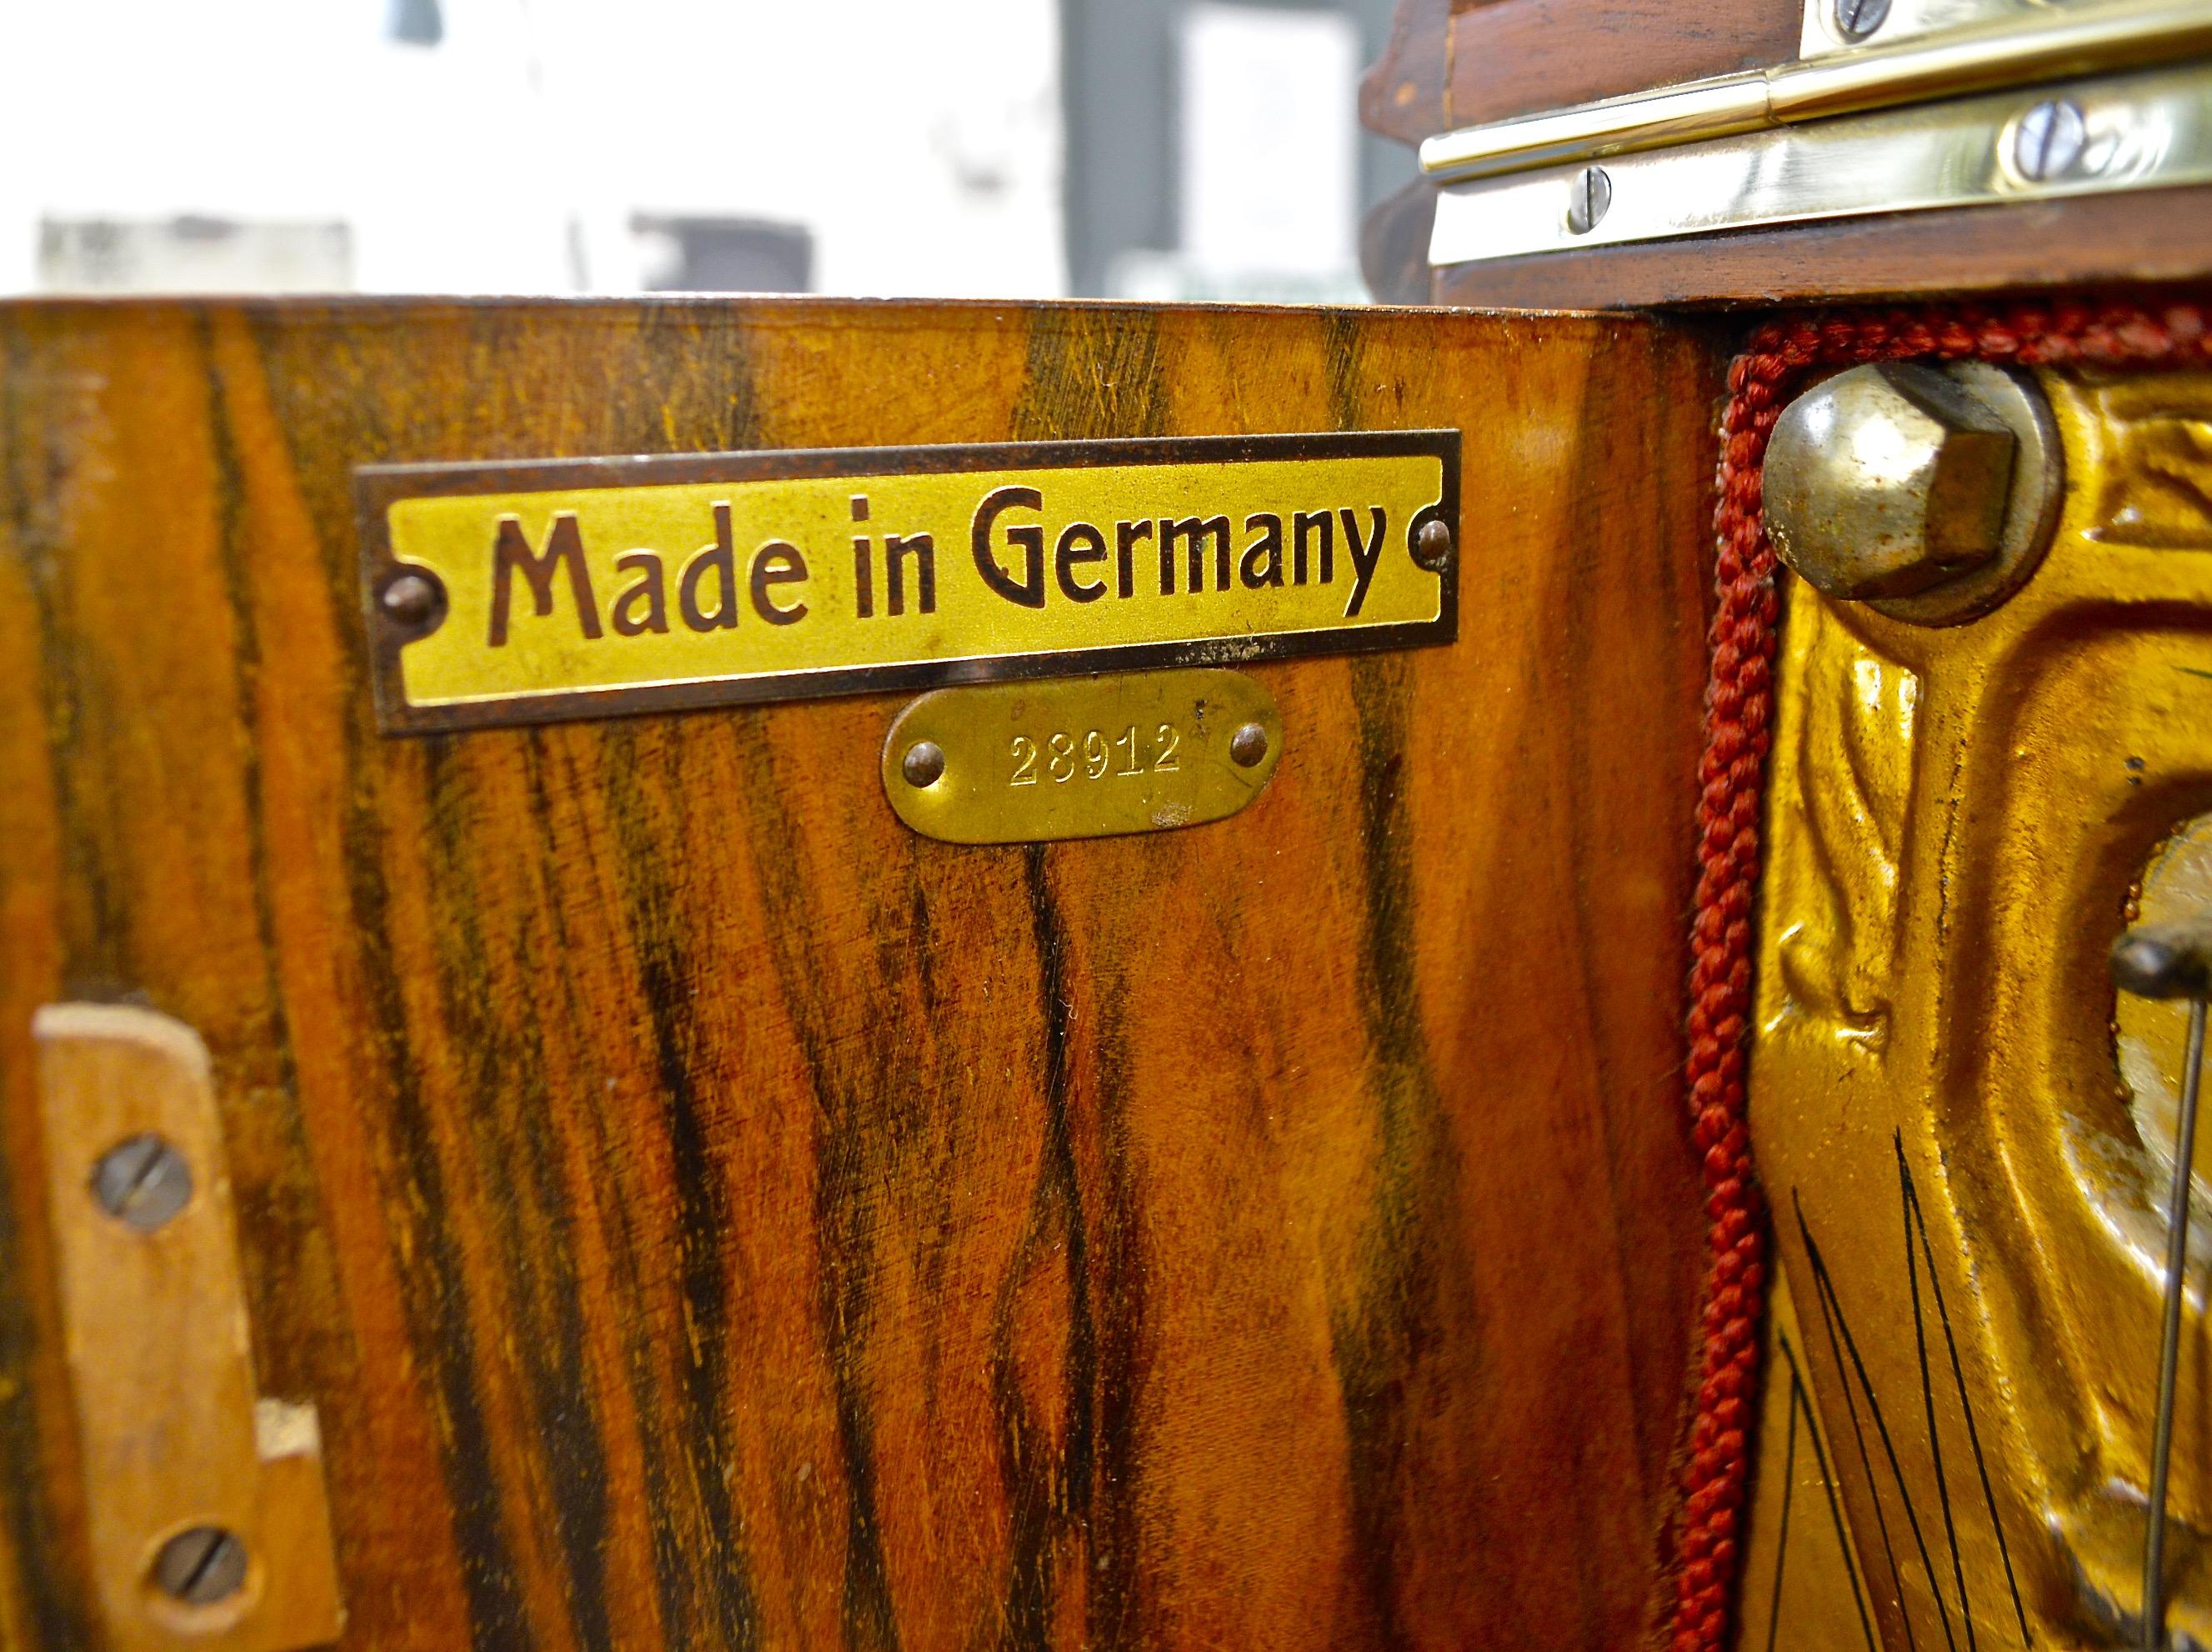 German Himmel Berlin Piano in Burl Walnut